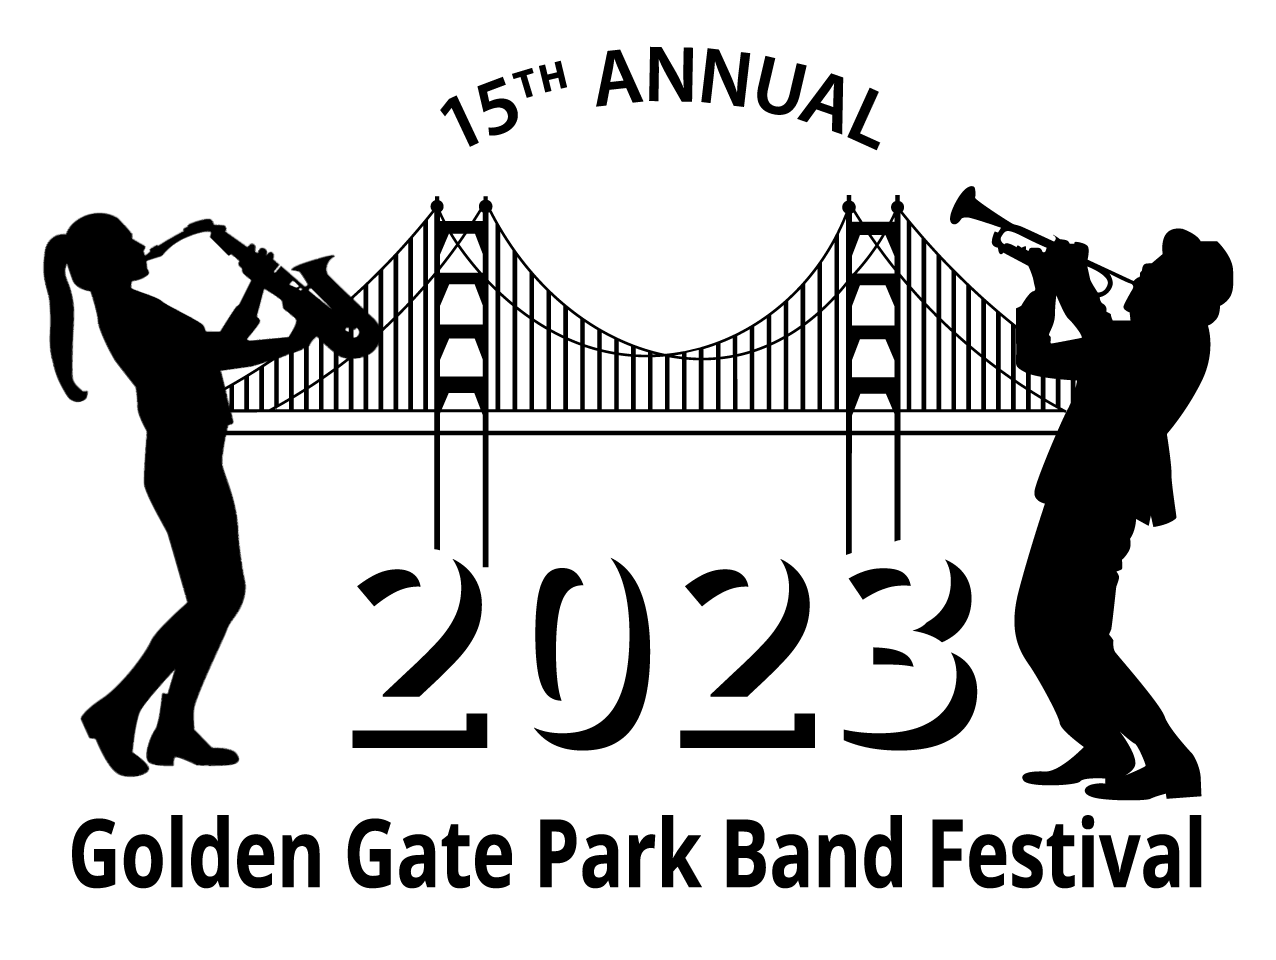 The 2023 Golden Gate Park Band Festival